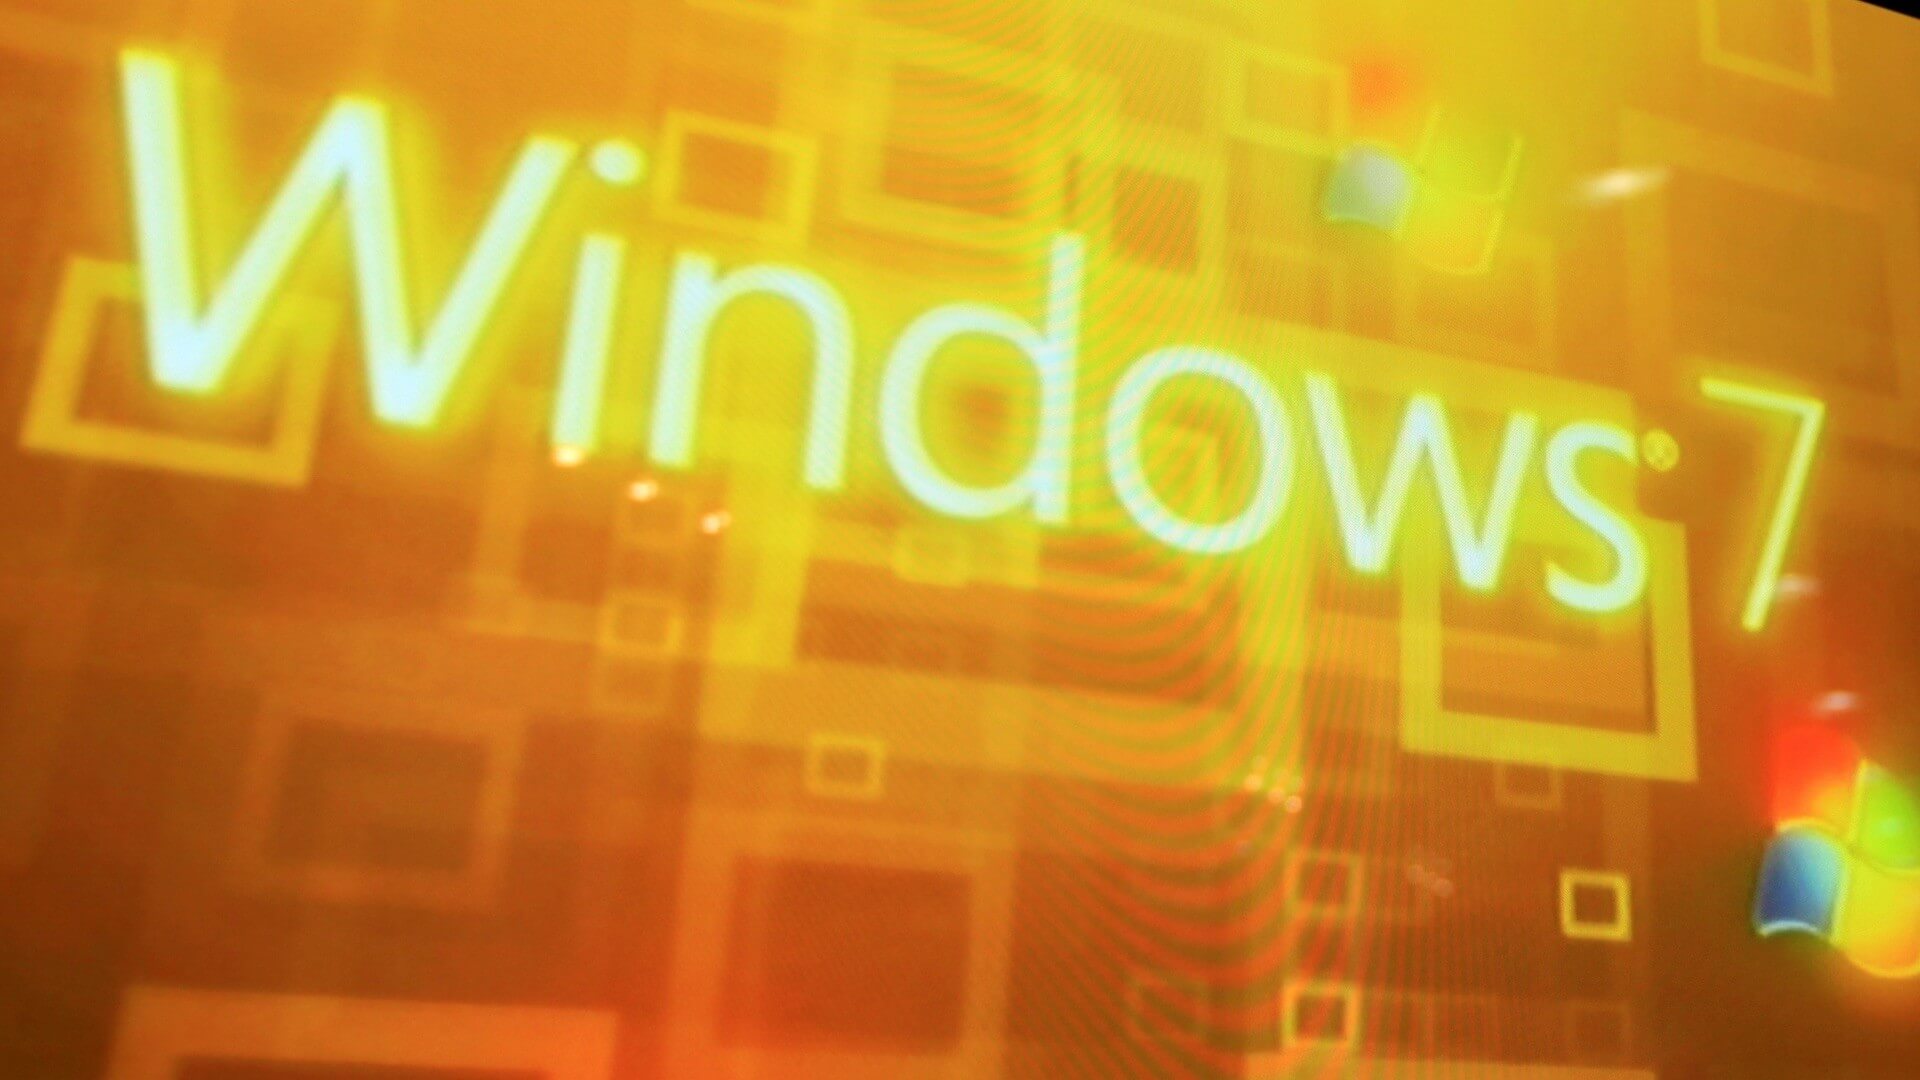 Windows 7: Snel een programma starten met vastpinnen